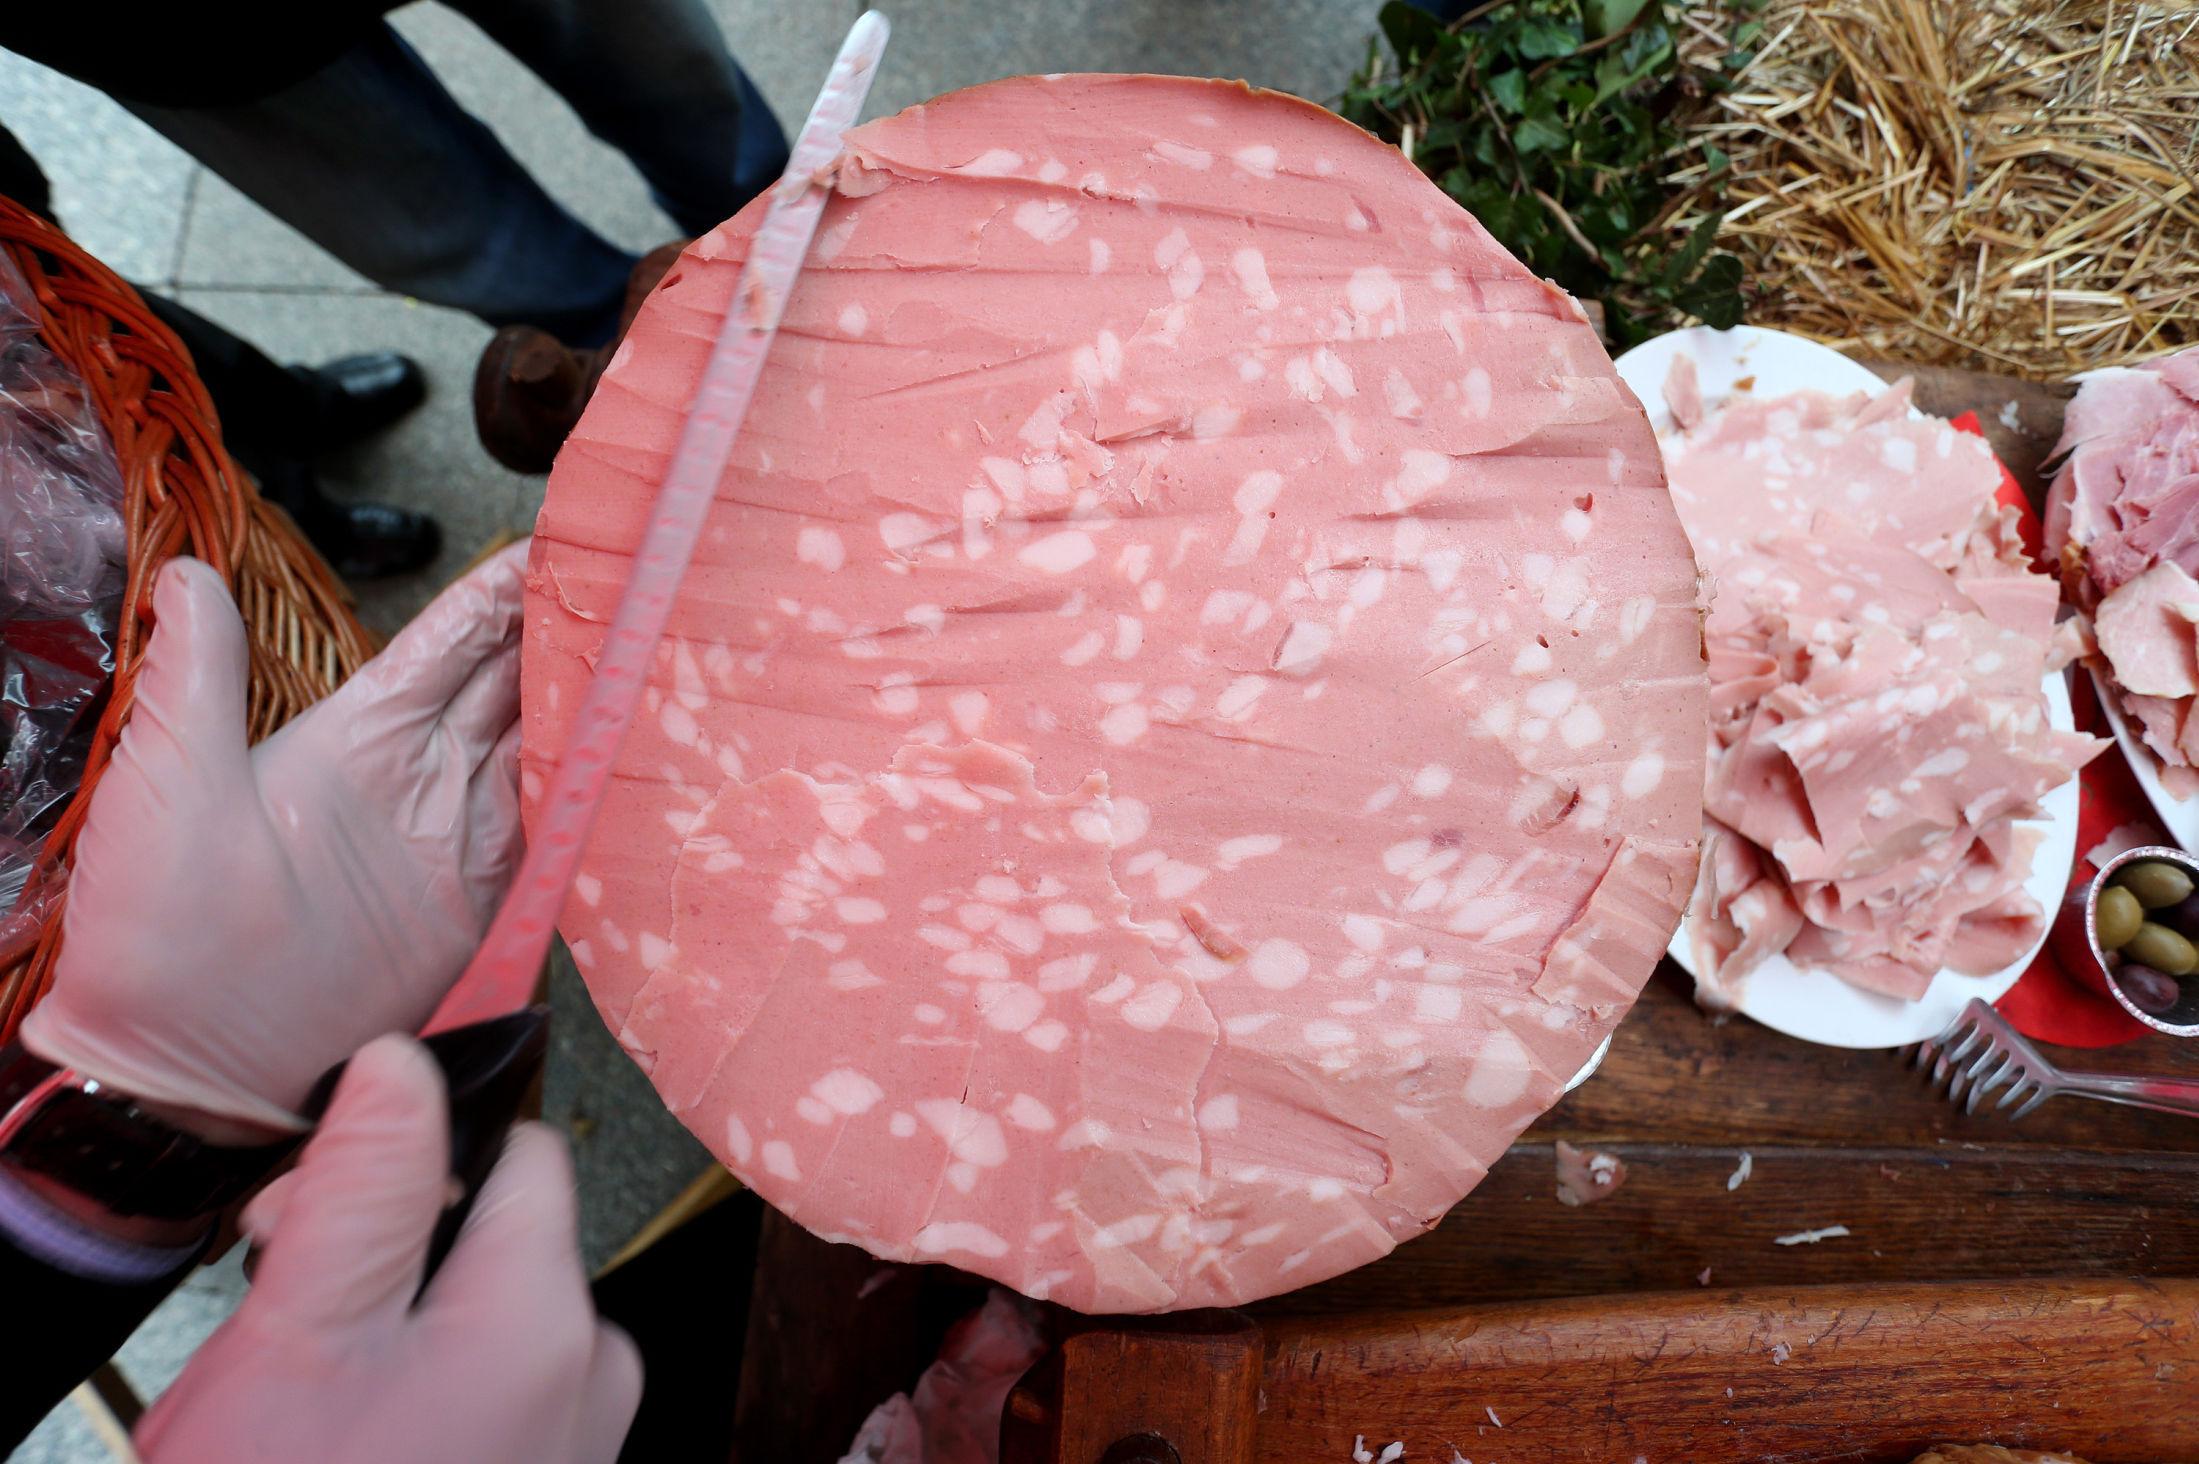 SVÆR: Mortadella er en pølsevariant som blant annet består av finmalt svinekjøtt og store biter fett. Her ses en 220-kilos mortadella fra et marked i Kroatia. Foto: Sanjin Strukic/PIXSELL